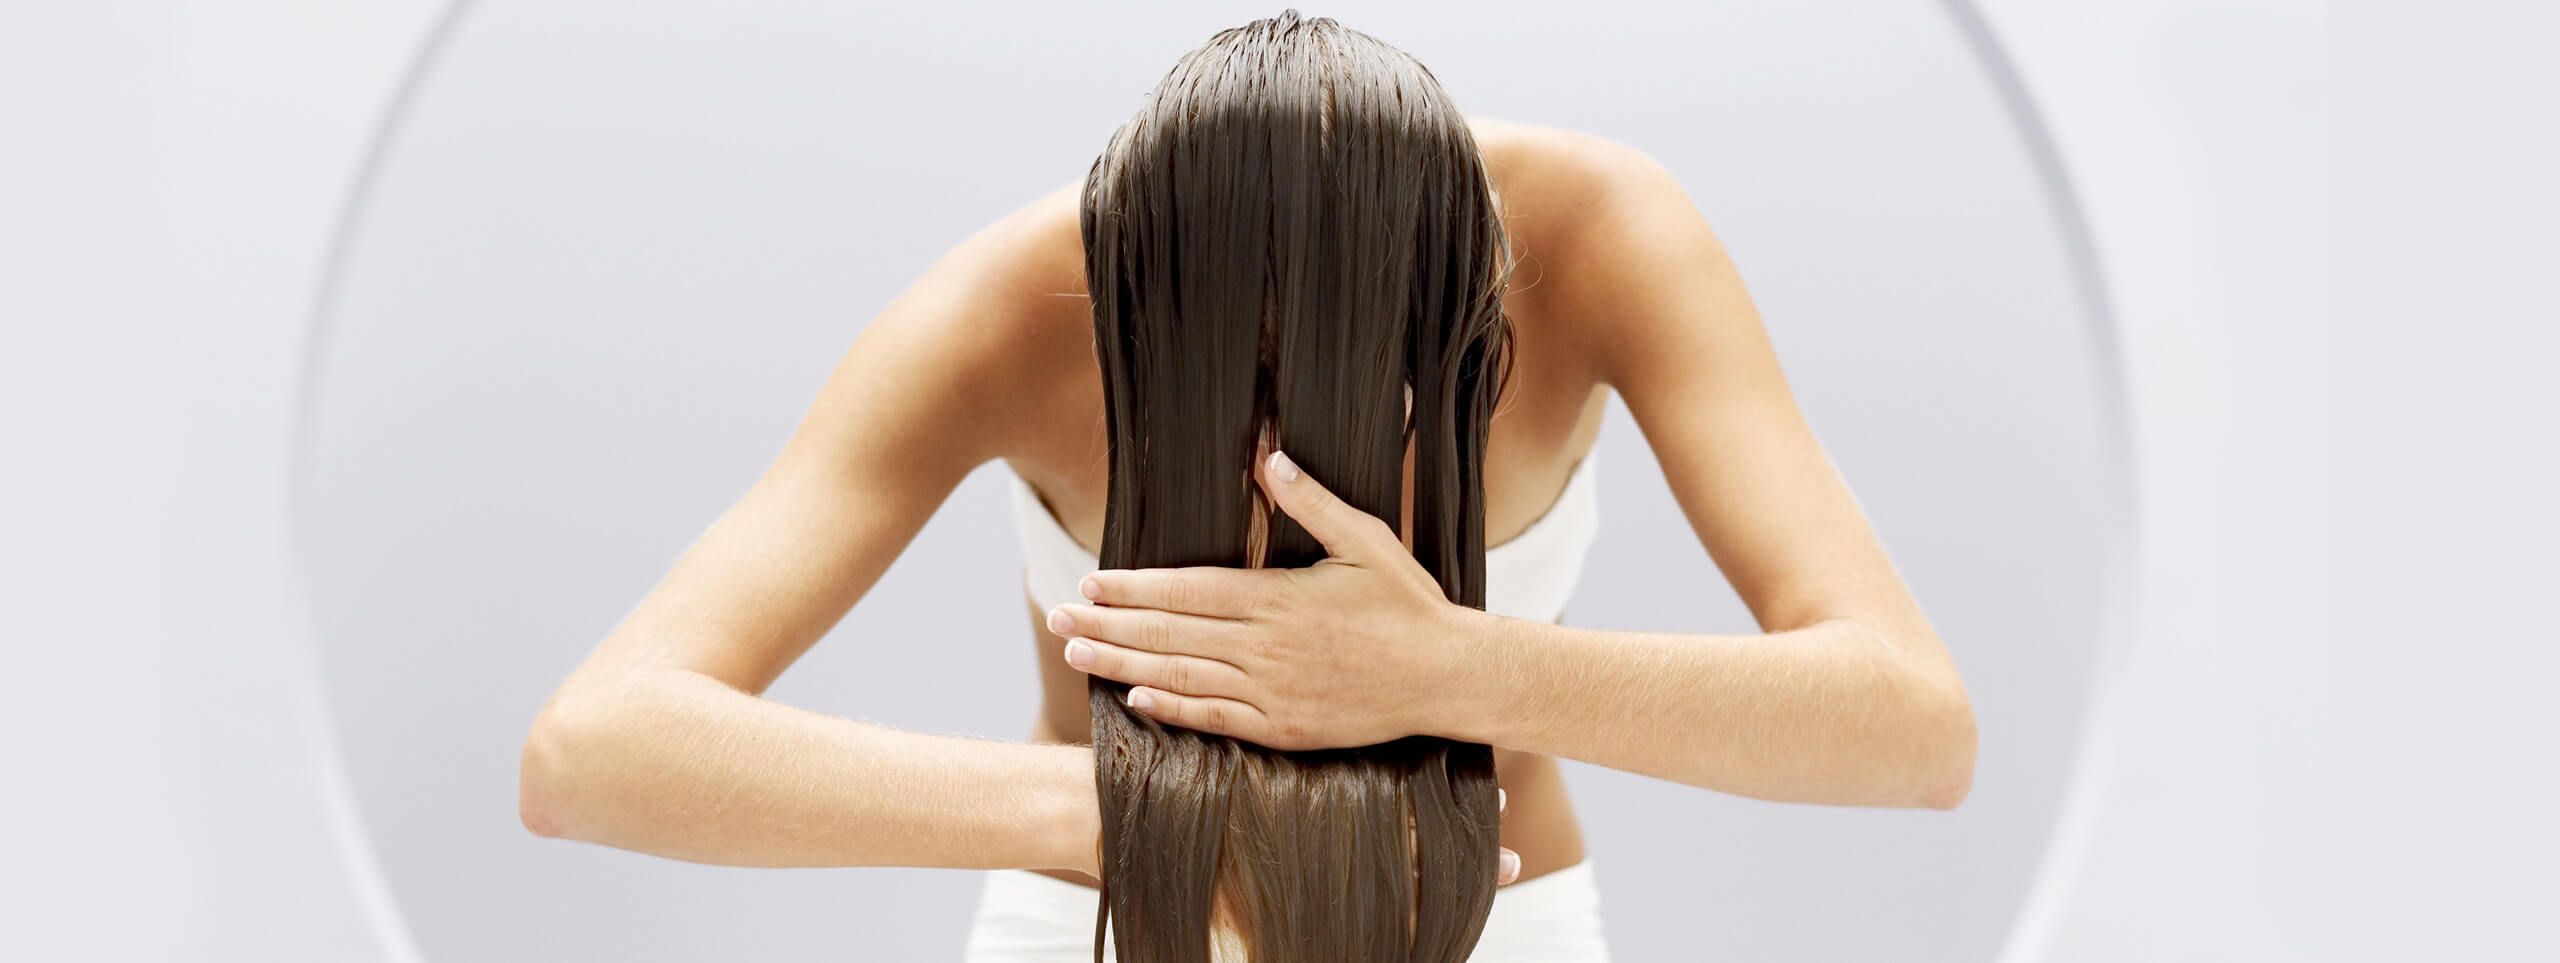 Woman applies hair treatment to long hair